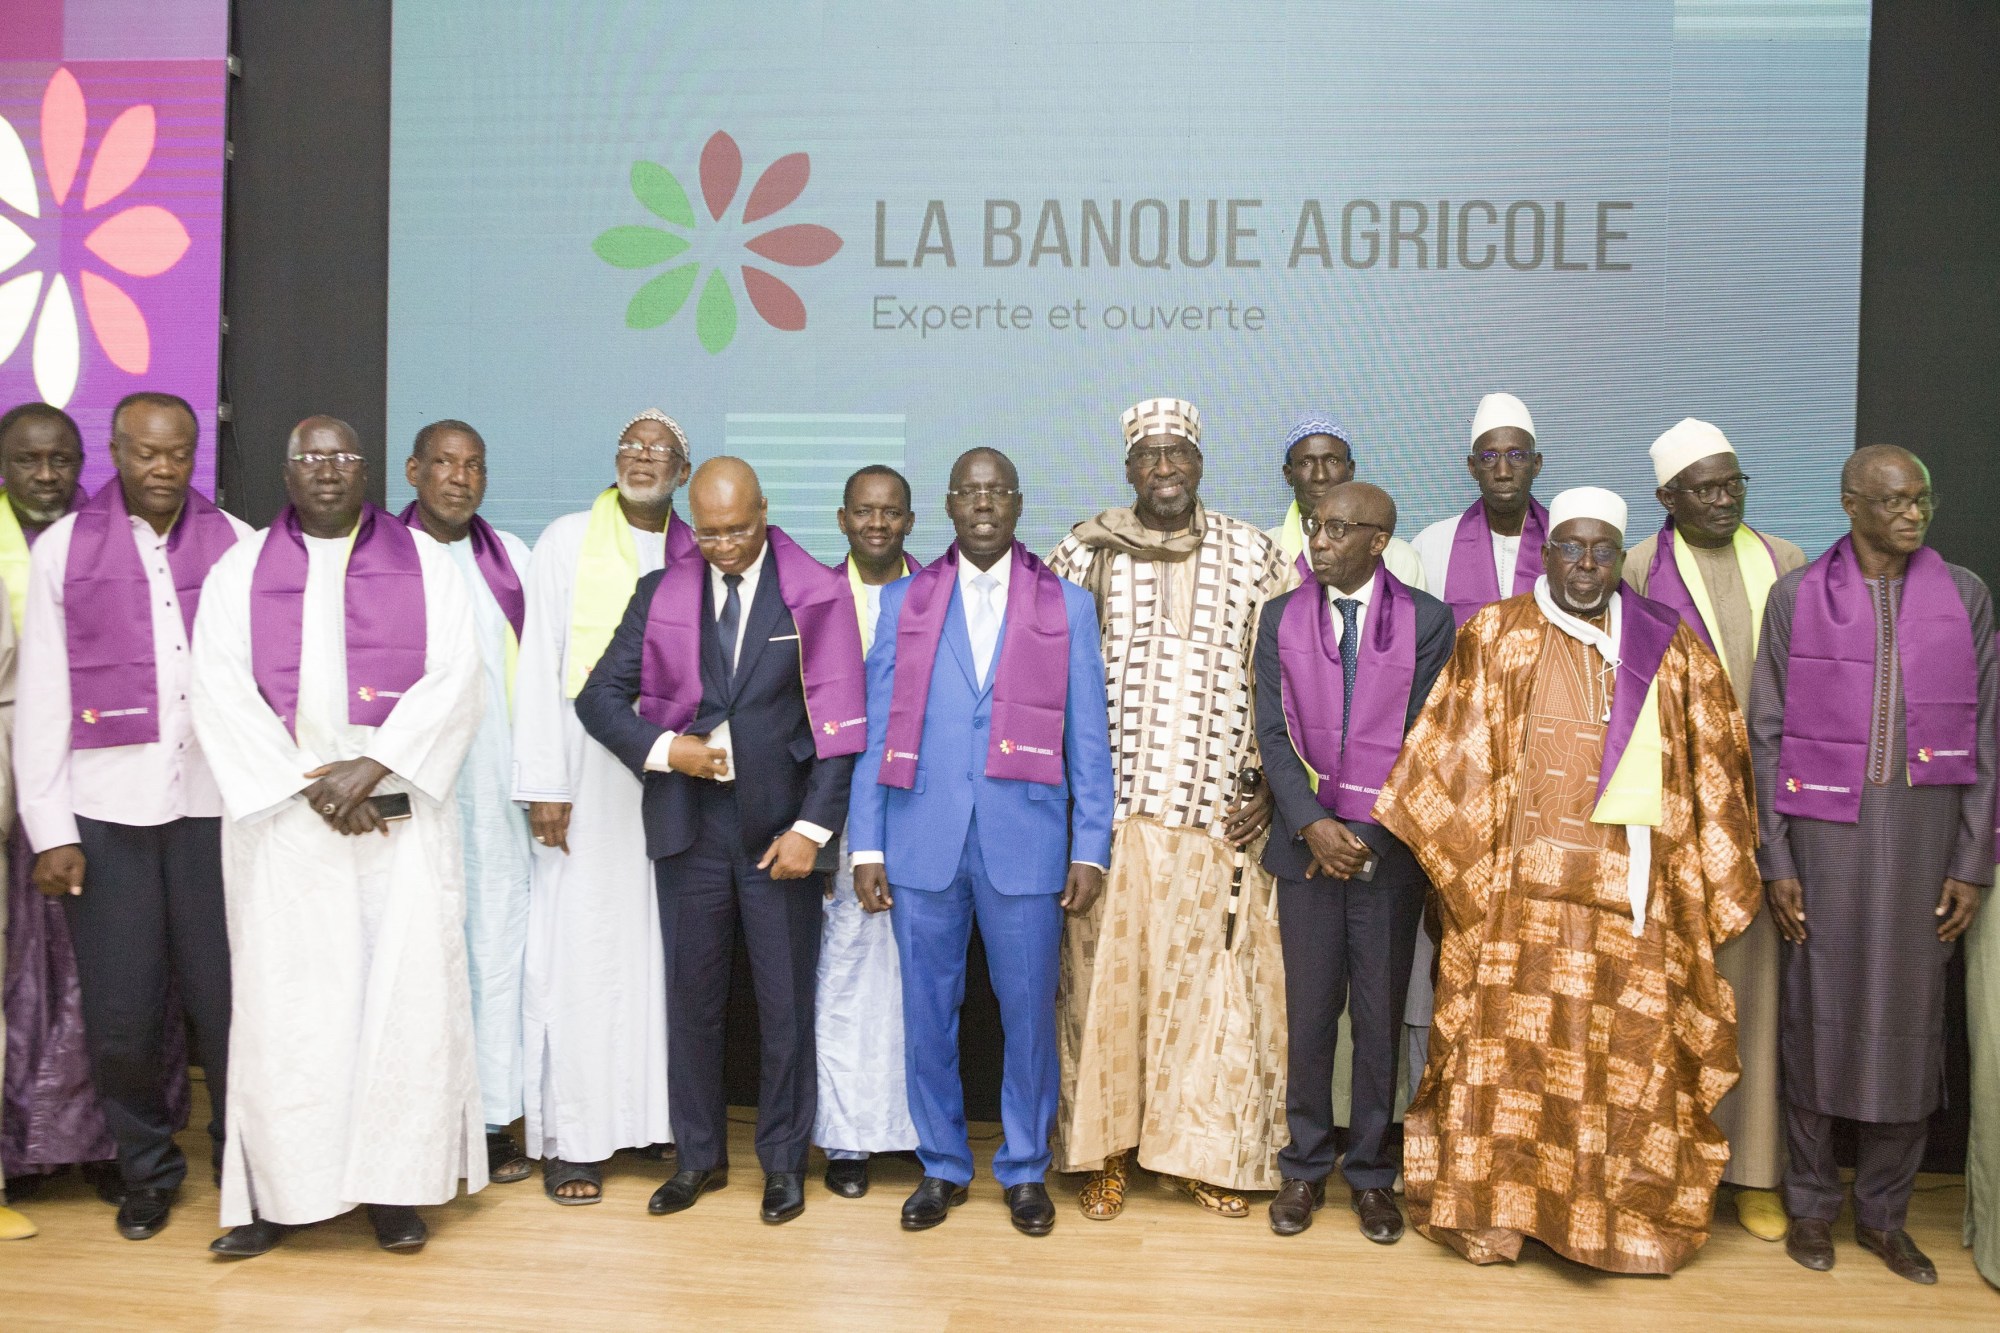 Banques : La Caisse Nationale de Crédit Agricole du Sénégal  porte désormais le nom   de «  La Banque Agricole », un nouveau logo et une nouvelle identité visuelle